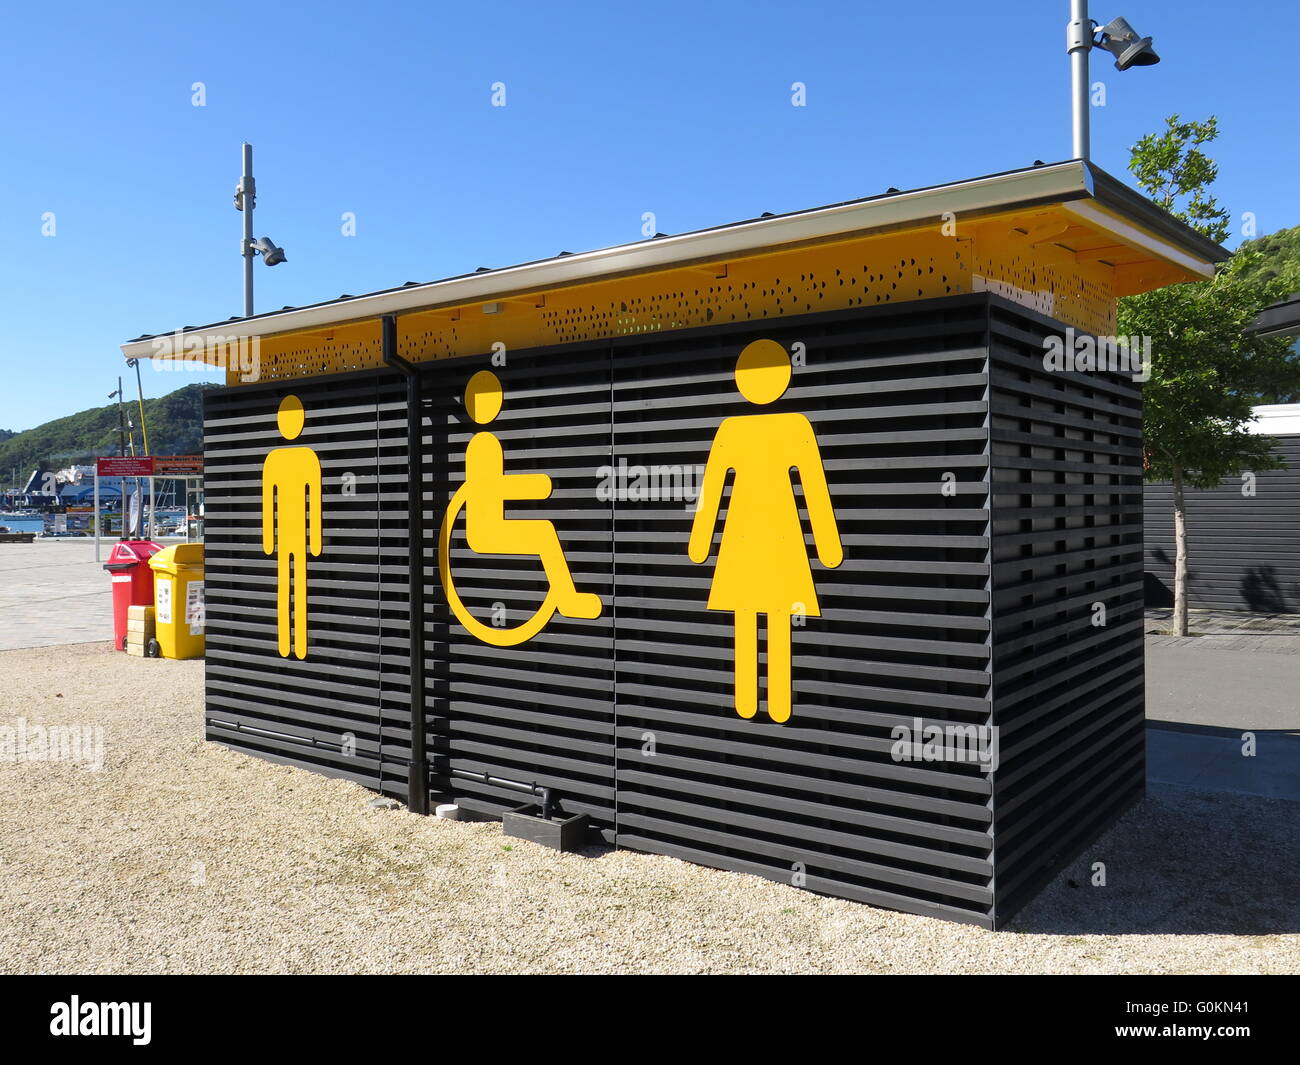 Bloc de toilettes publiques à Picton, île du Sud, Nouvelle-Zélande Banque D'Images